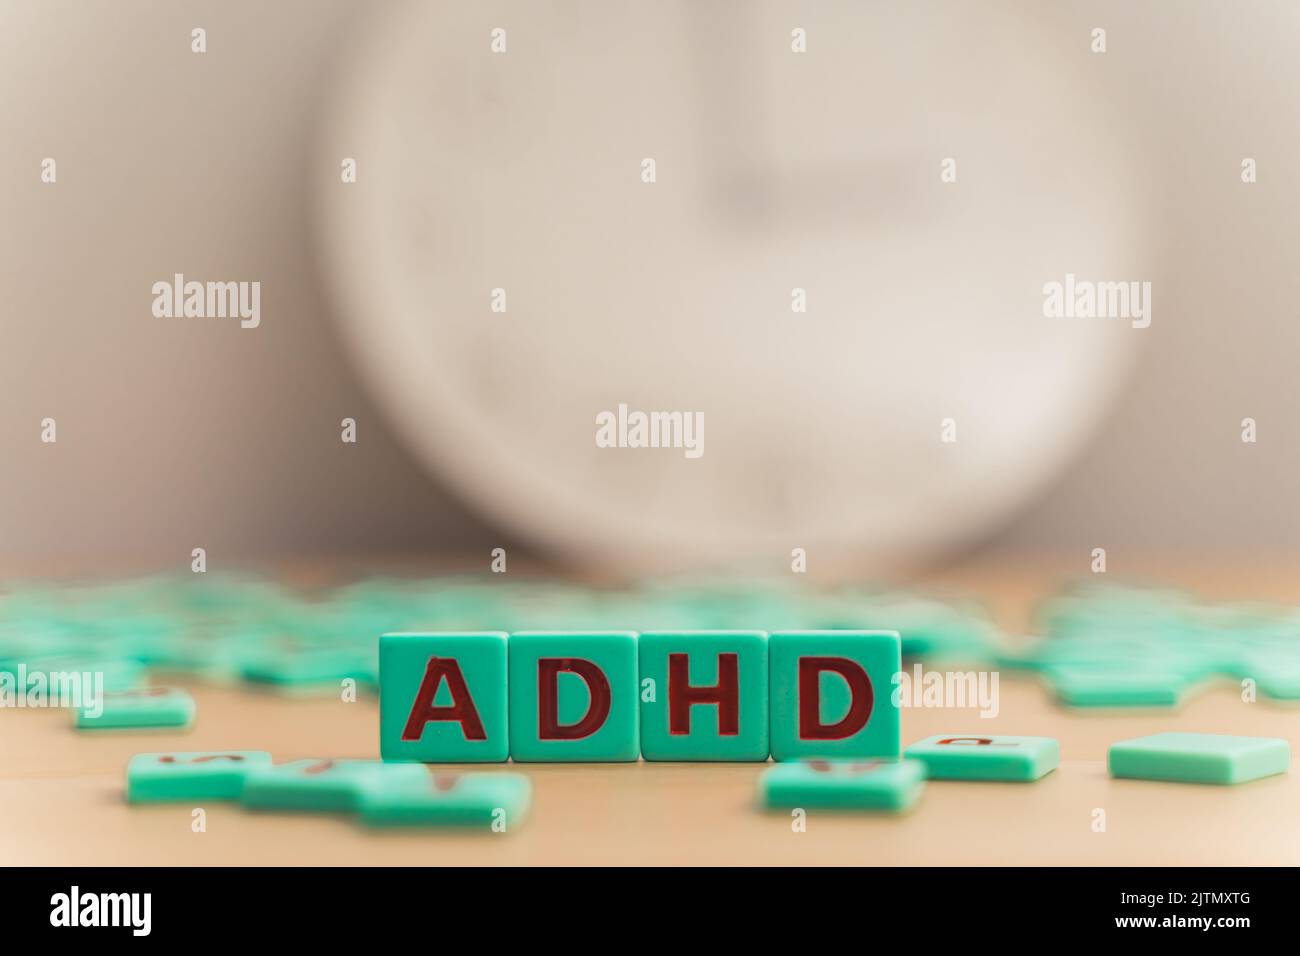 La parola ADHD. Piccoli cubi colorati con lettere su di essi. Disturbo da deficit di attenzione e iperattività. Salute mentale. Foto di alta qualità Foto Stock